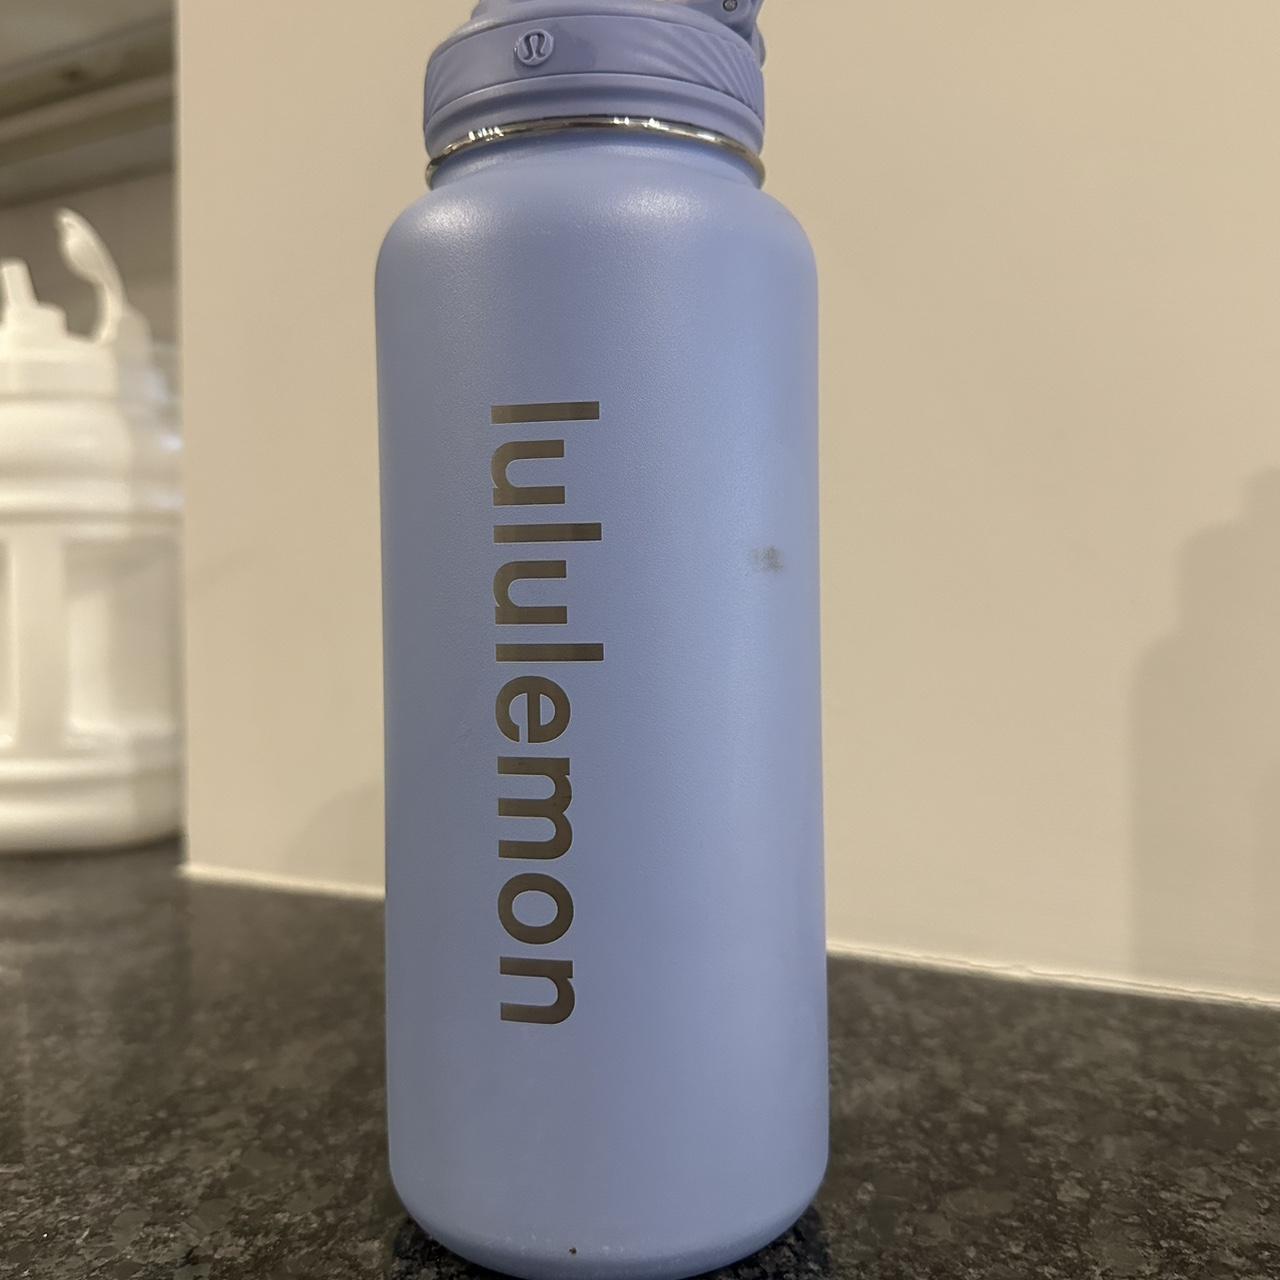 lululemon water bottle - Depop